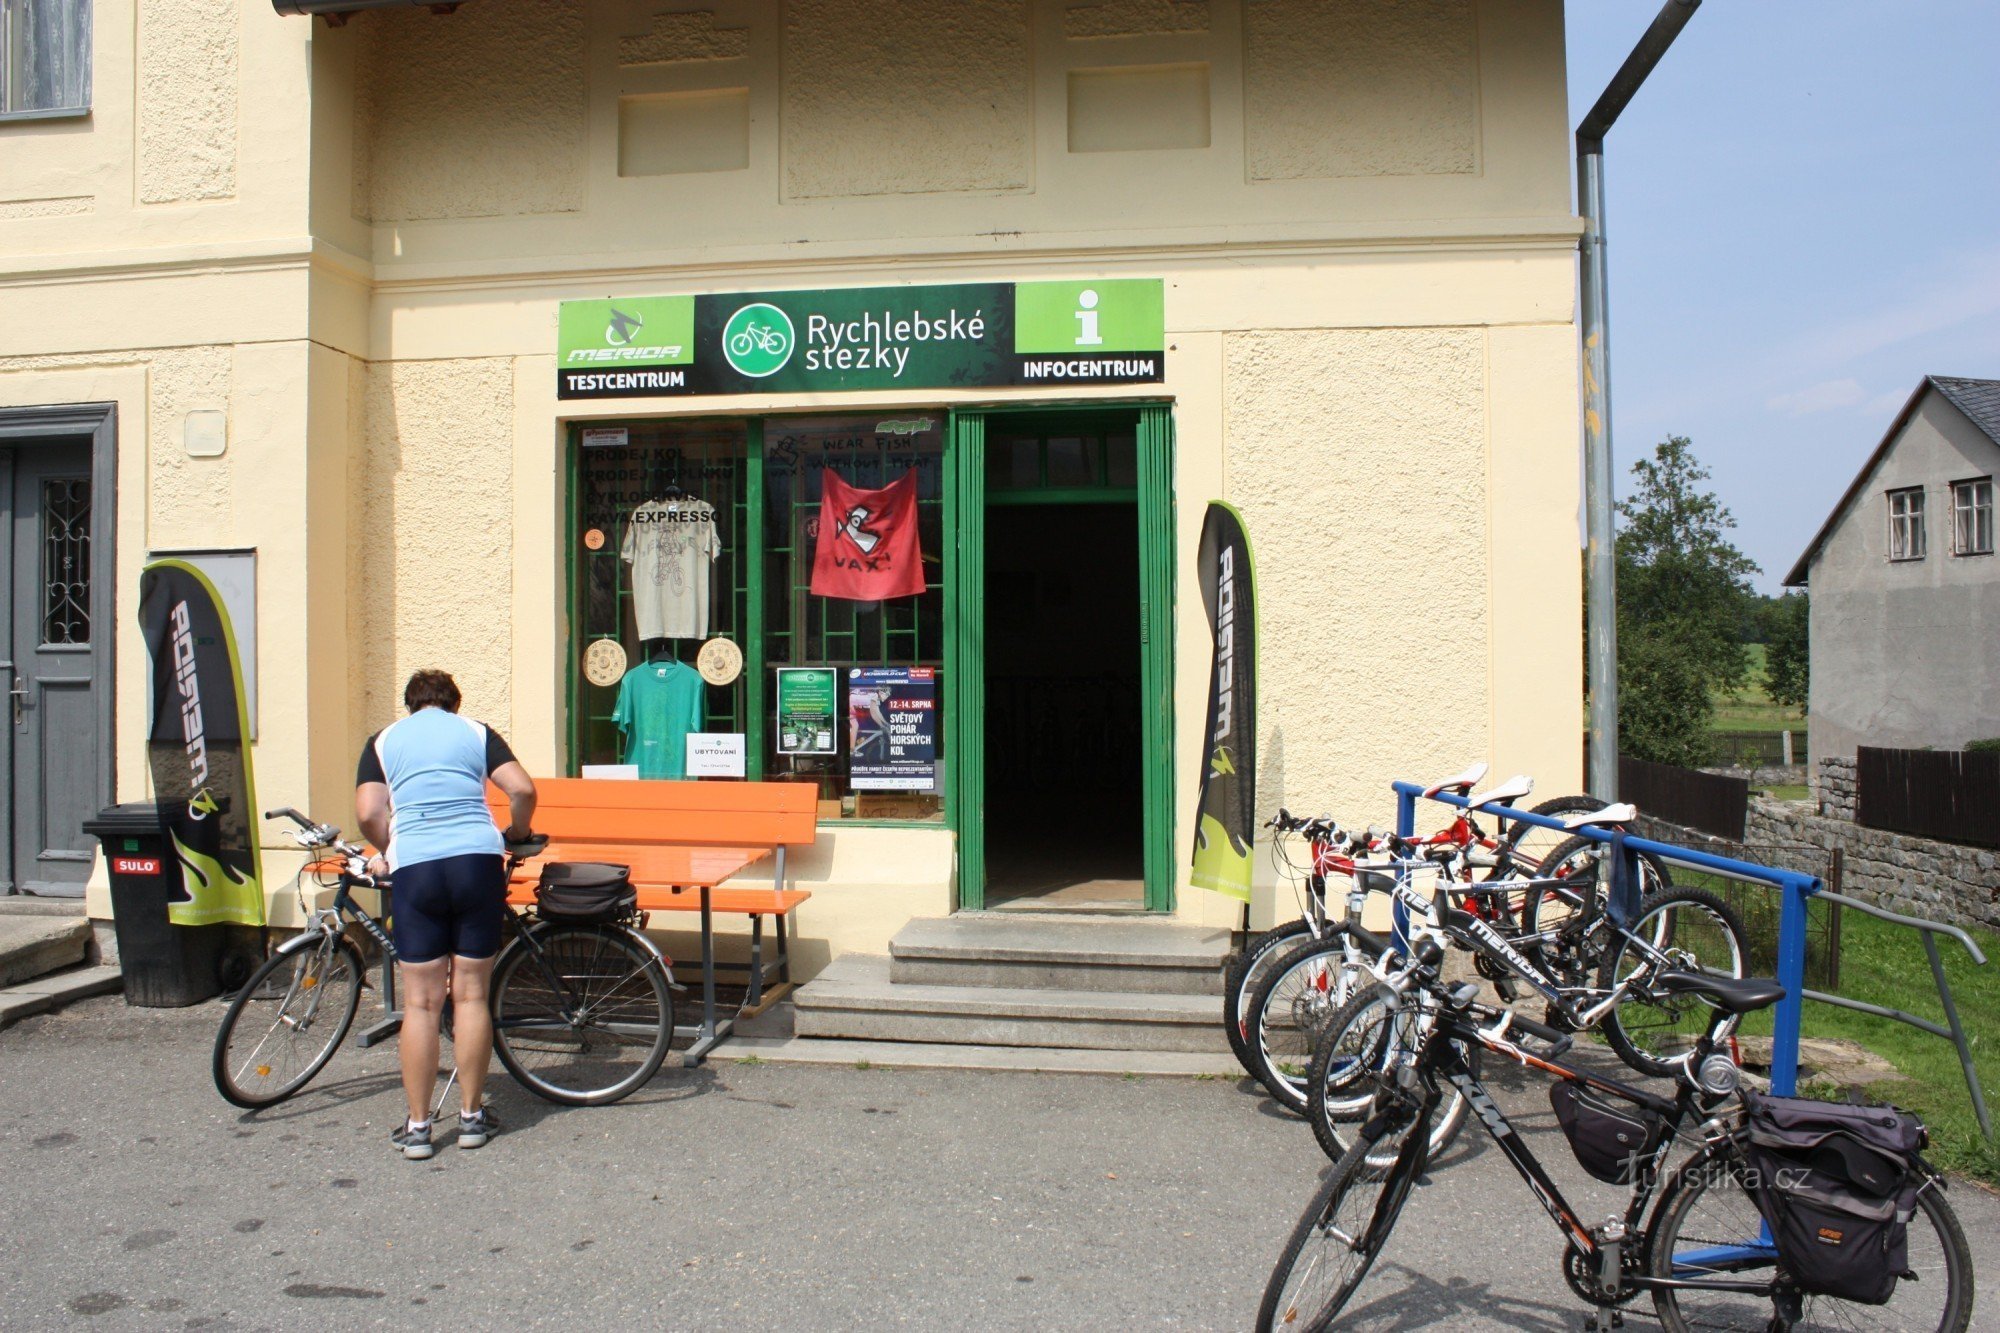 Infocentrum Rychlebské stezky - lehetőség térkép vásárlására és Merida kerékpárok bérlésére